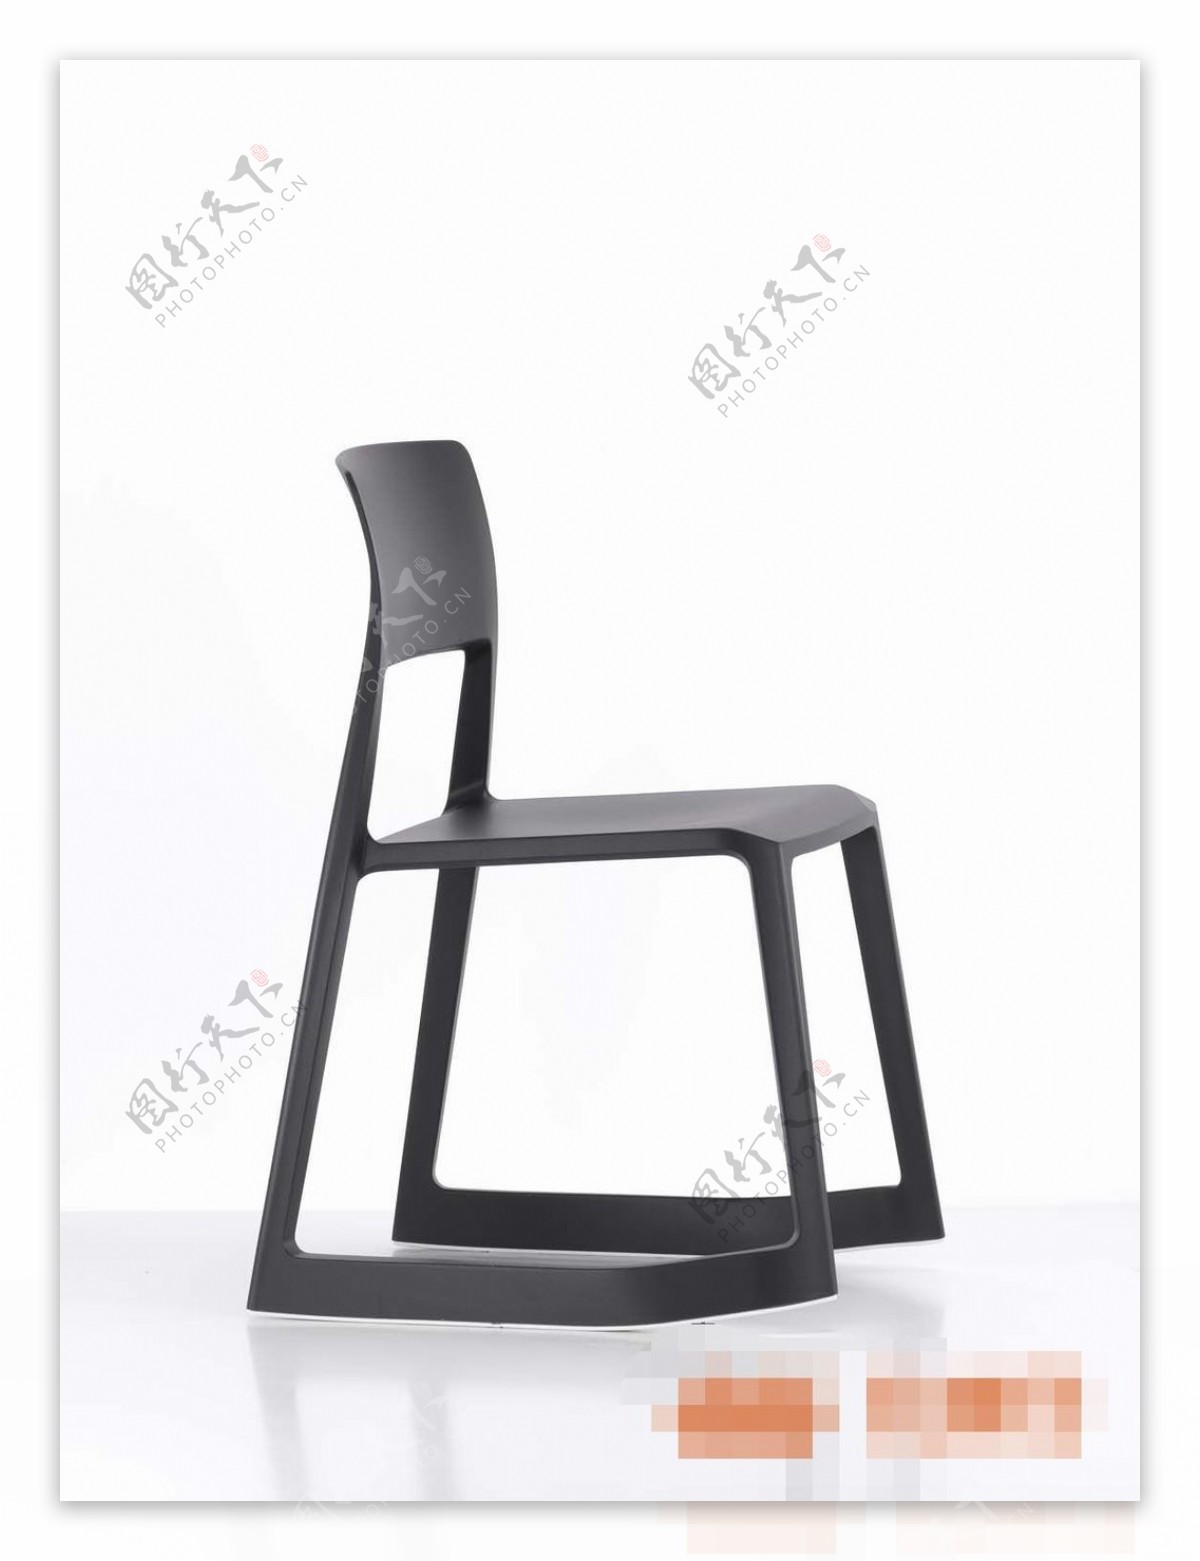 高端黑色系列单人椅子素材